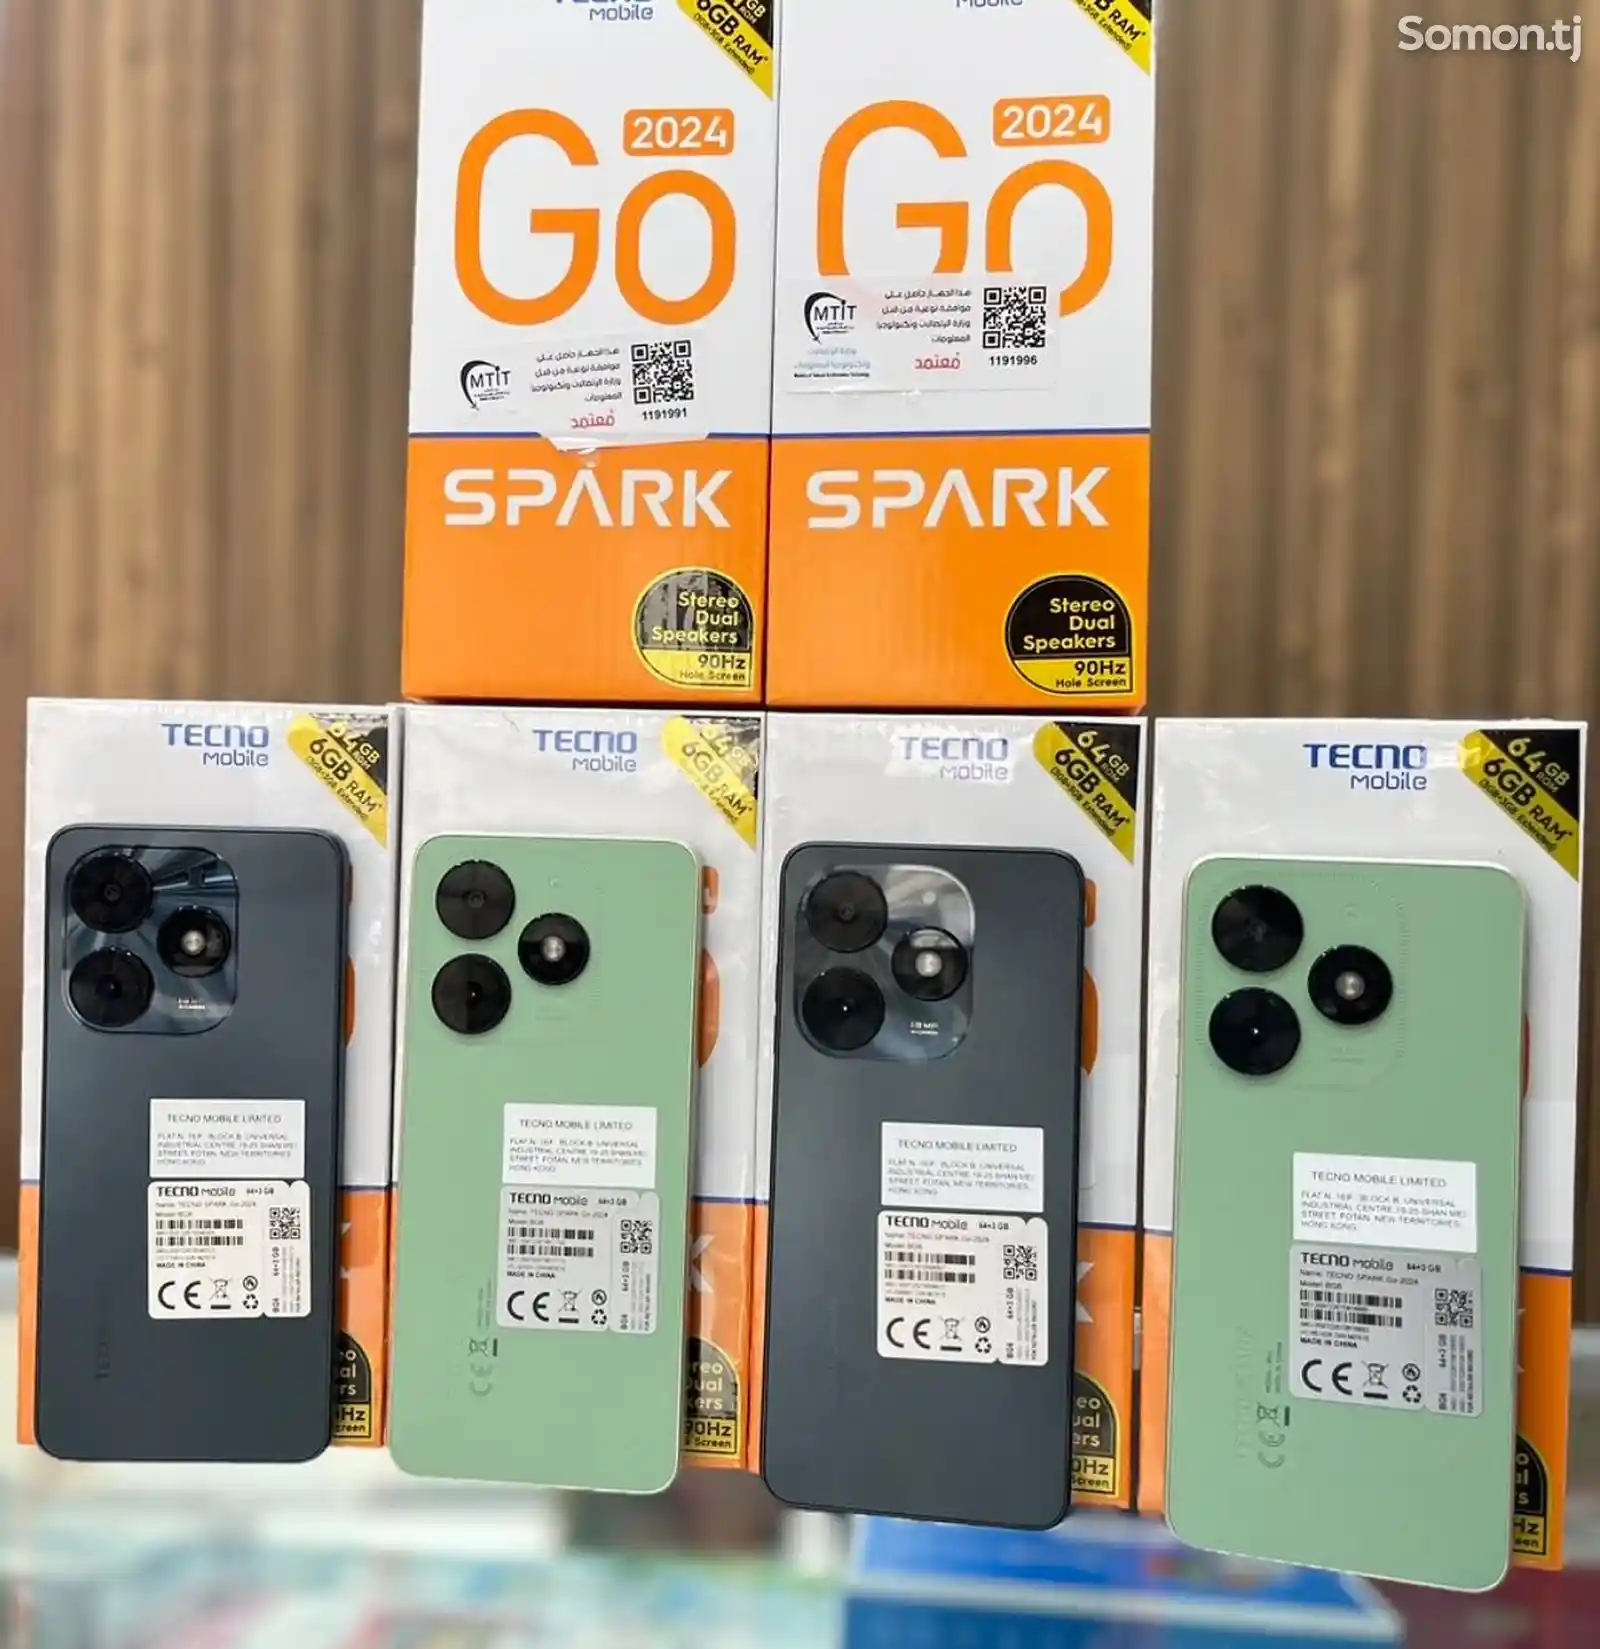 Tecno Spark Go 2024 4+4/64GB Global Version